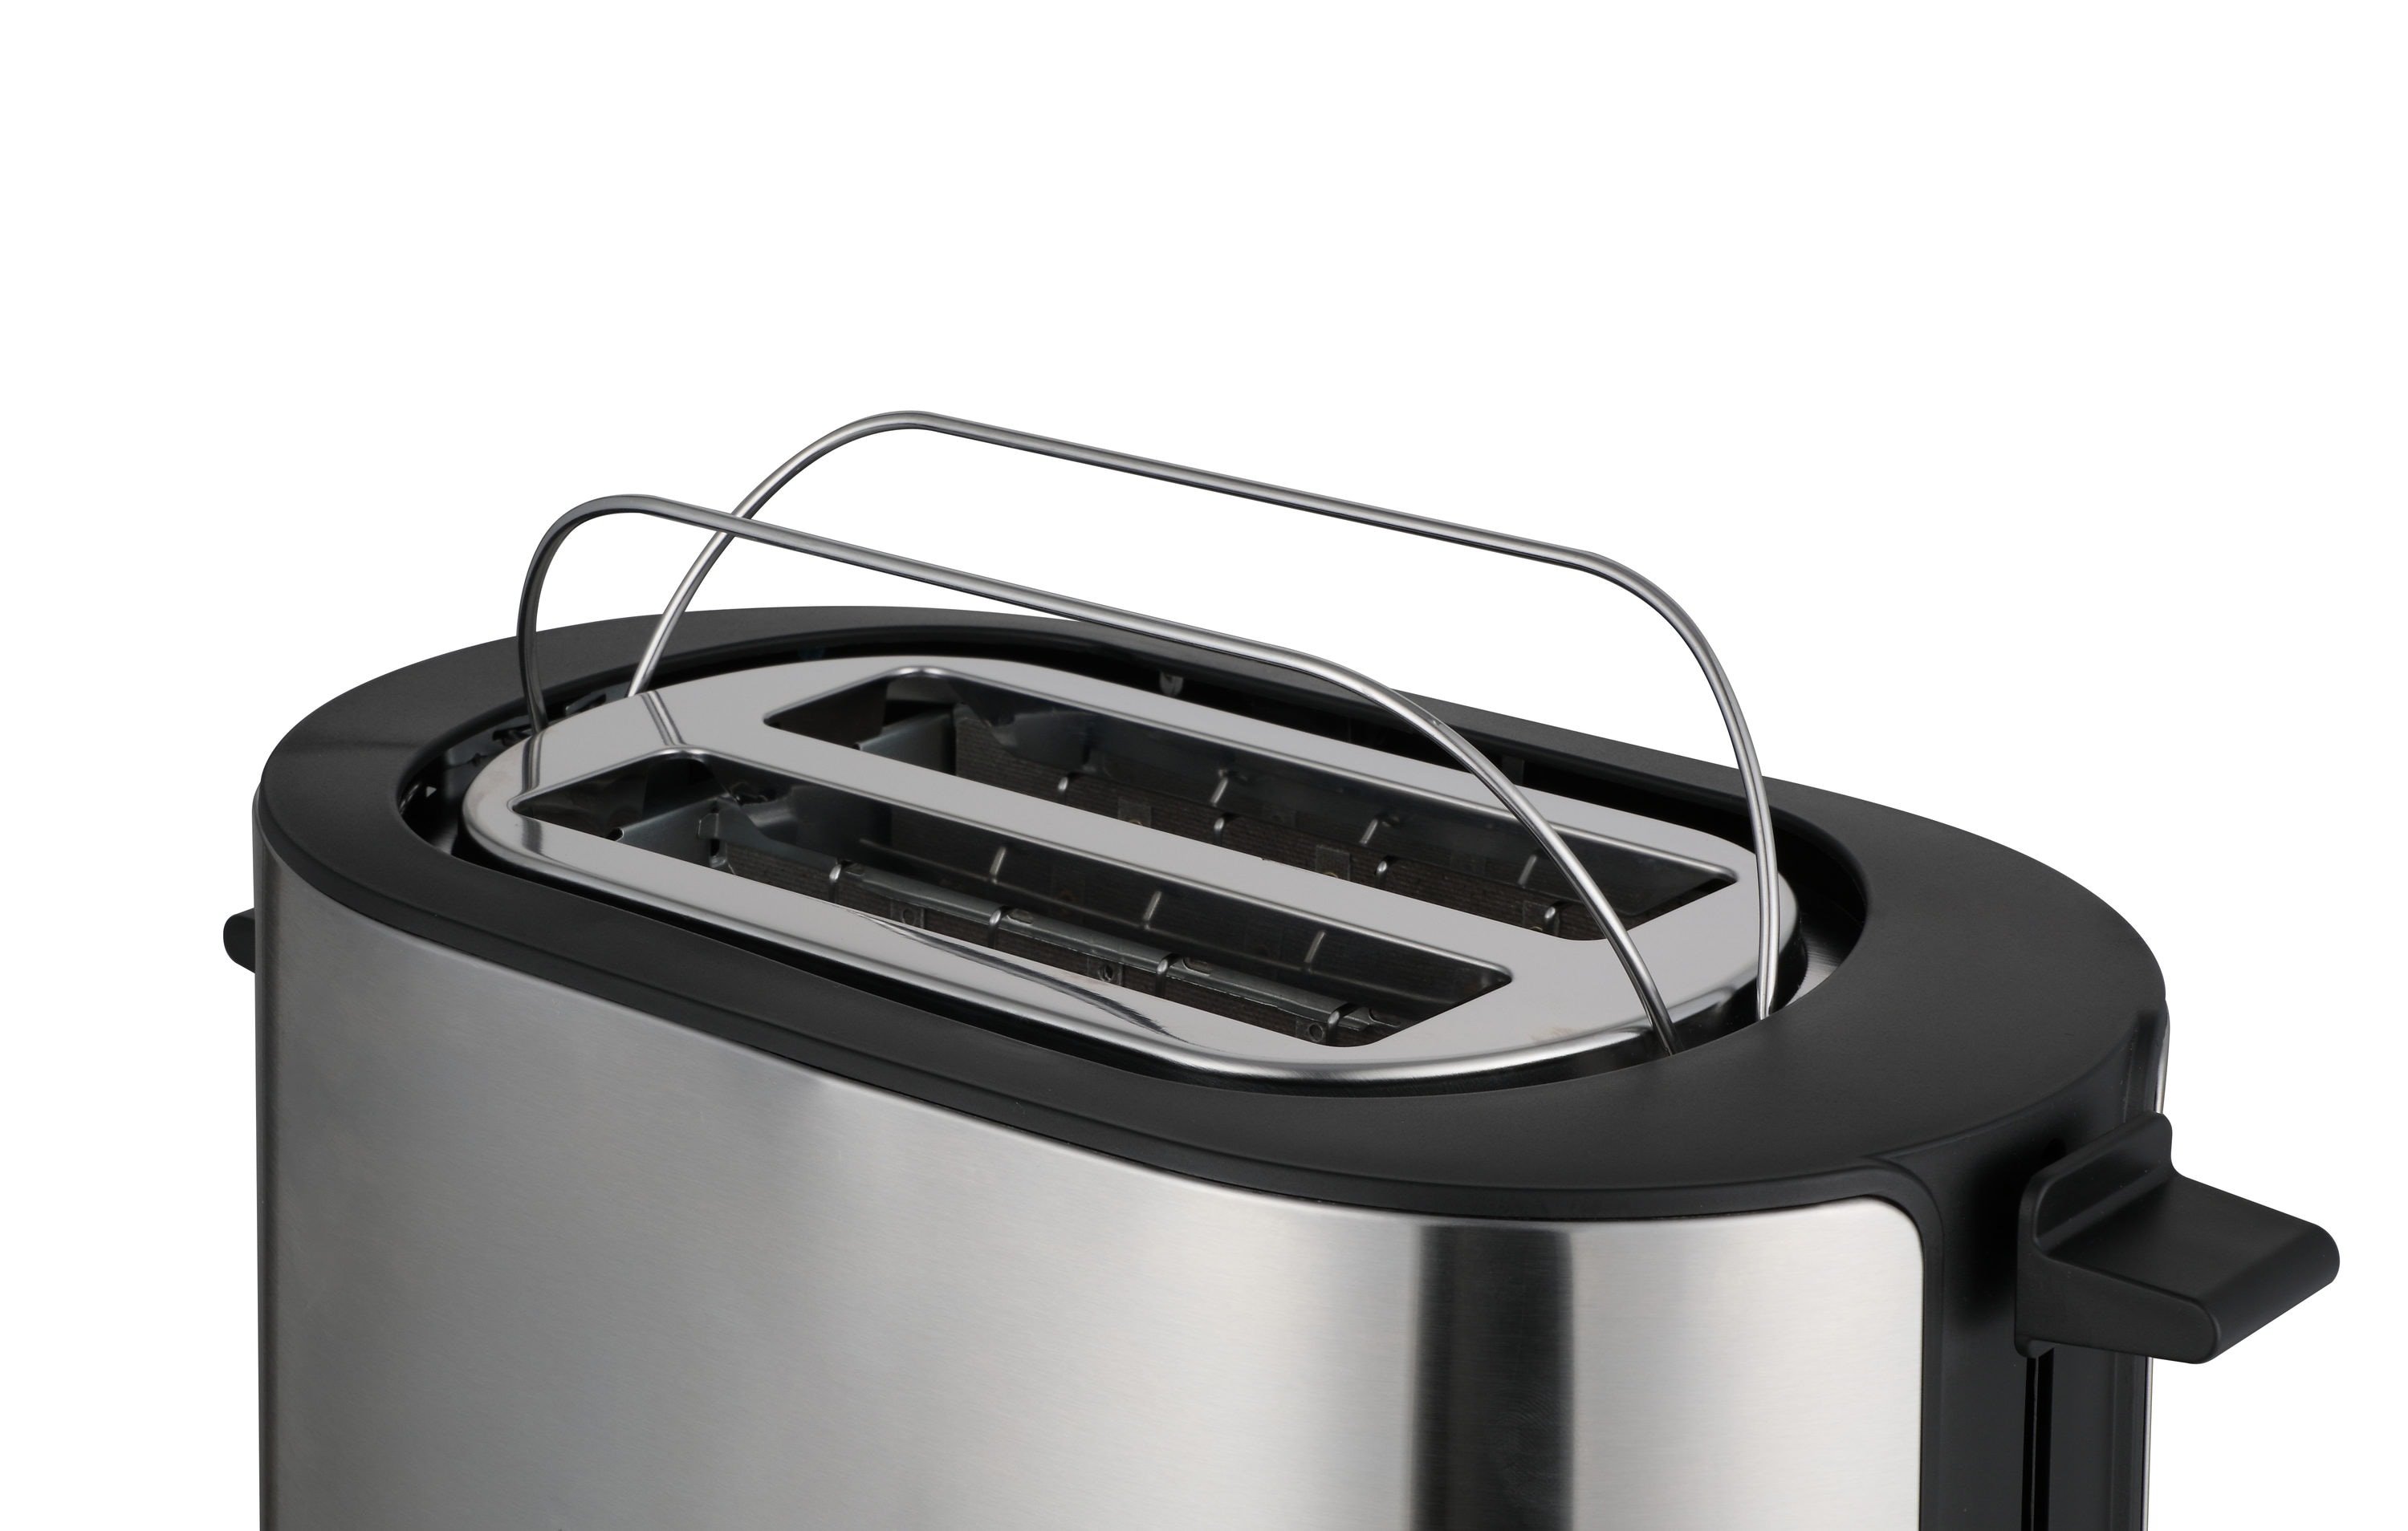 Highland 4-Slice Stainless Steel Toaster Oven (1100-Watt) in the